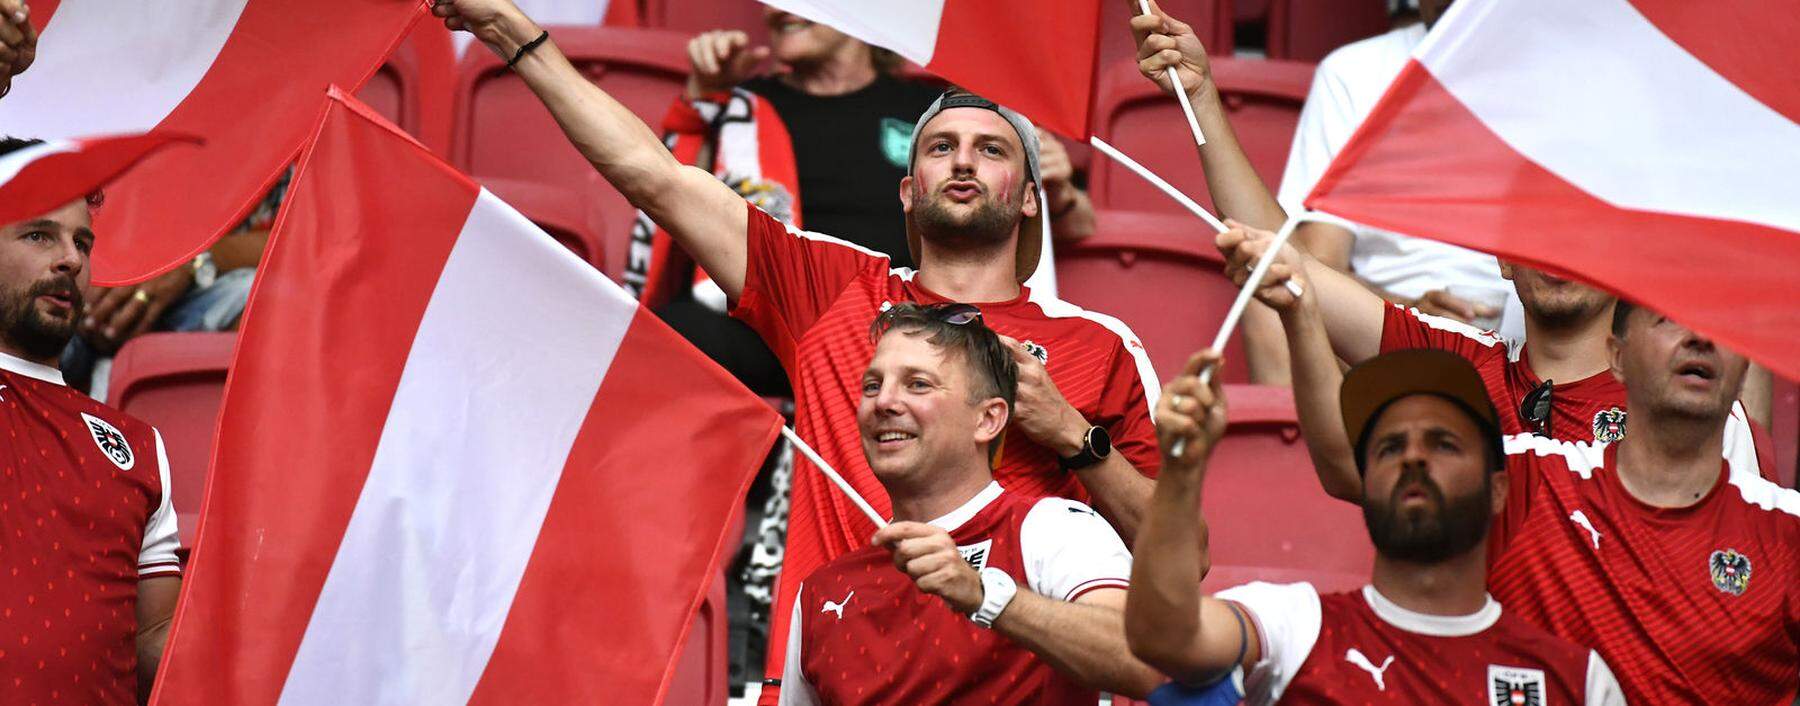 Zarte EM-Stimmung ist bei den österreichischen Fans aufgekommen, eine nationale Massenbewegung wie 2016 aber noch nicht zu bemerken.